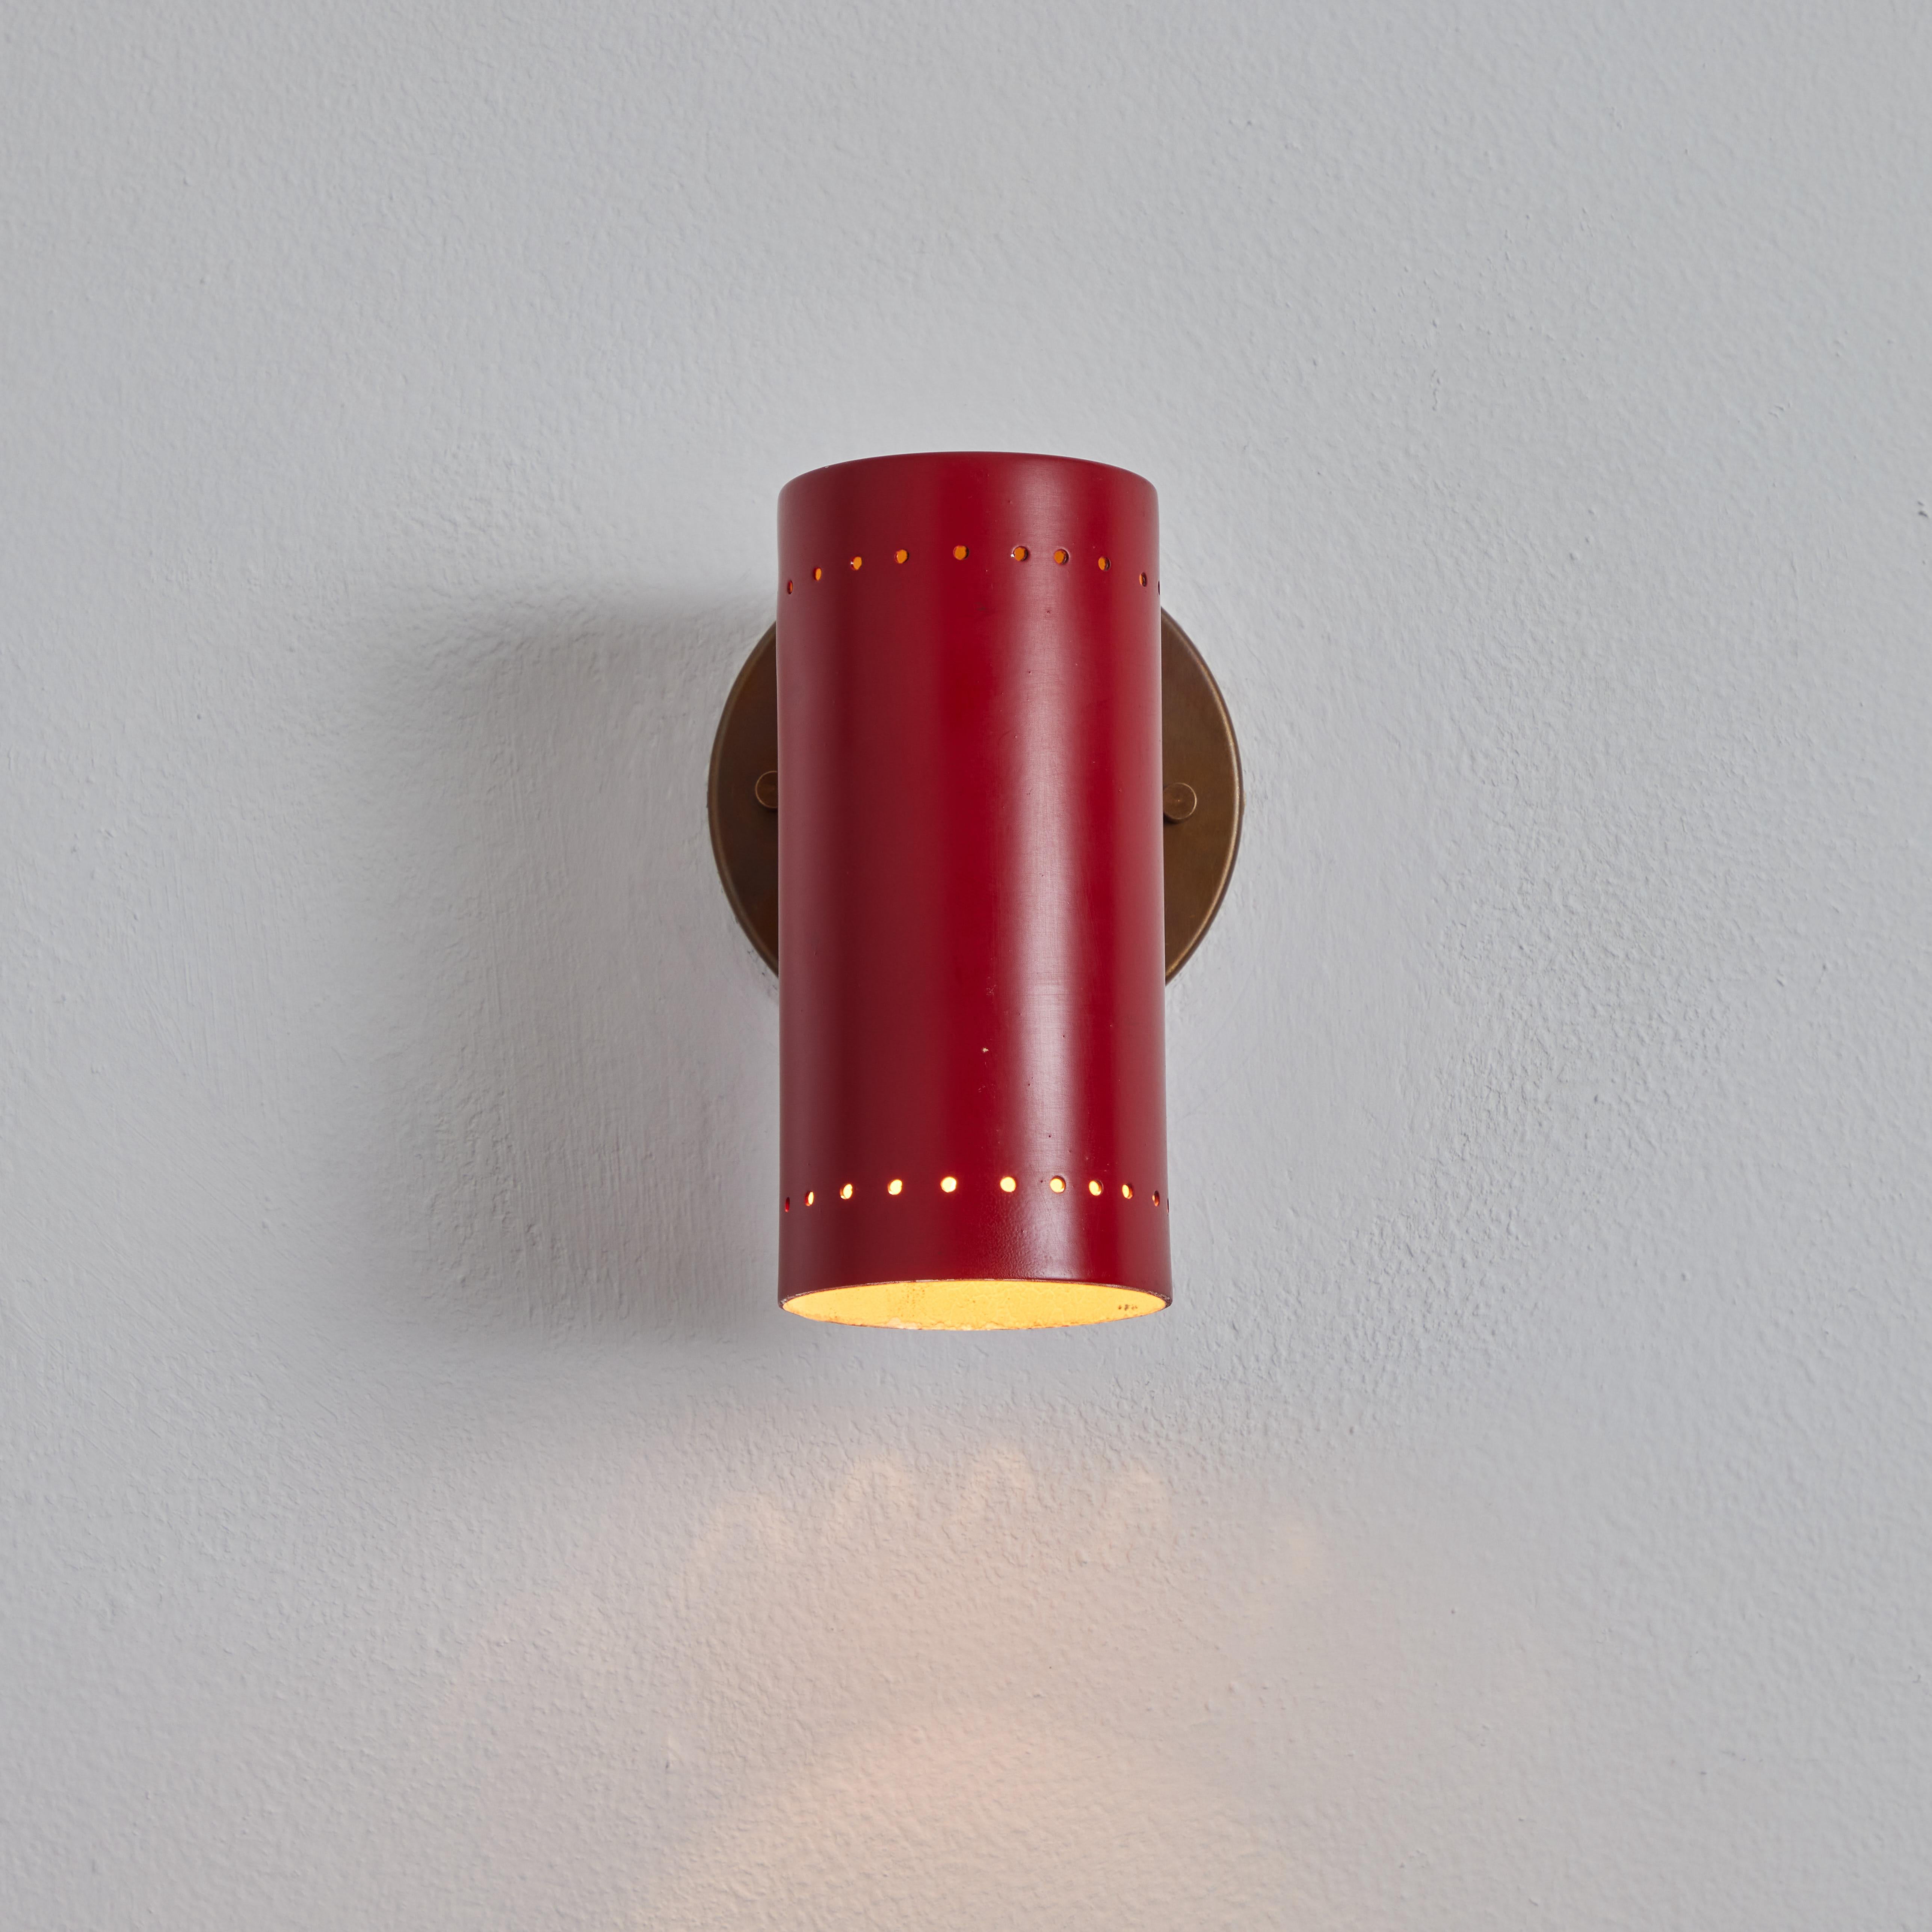 Paire d'appliques articulées en laiton et rouge de Tito Agnoli pour O-Luce, datant des années 1960. L'un de ses designs minimalistes les plus raffinés. Élégants et fonctionnels, mais en même temps lumineux et ludiques. Une applique murale hautement